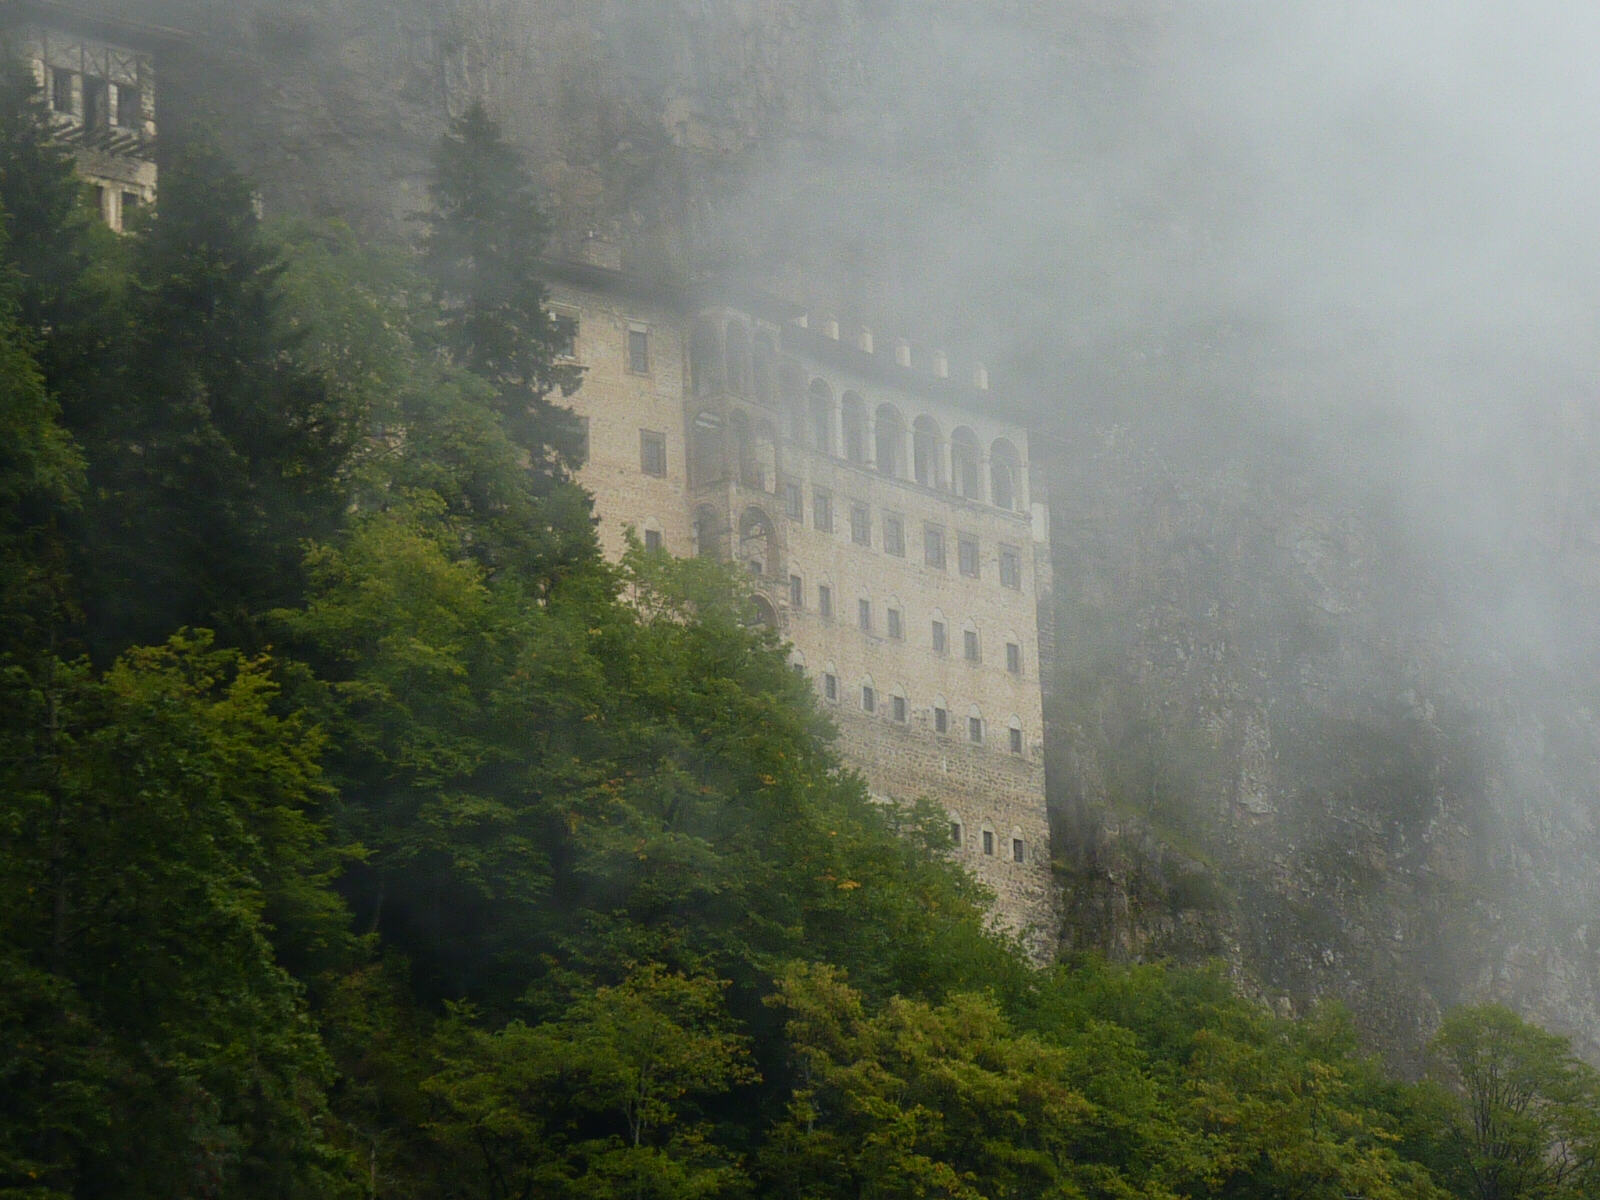 Sumela monastery near Trabzon, Turkey